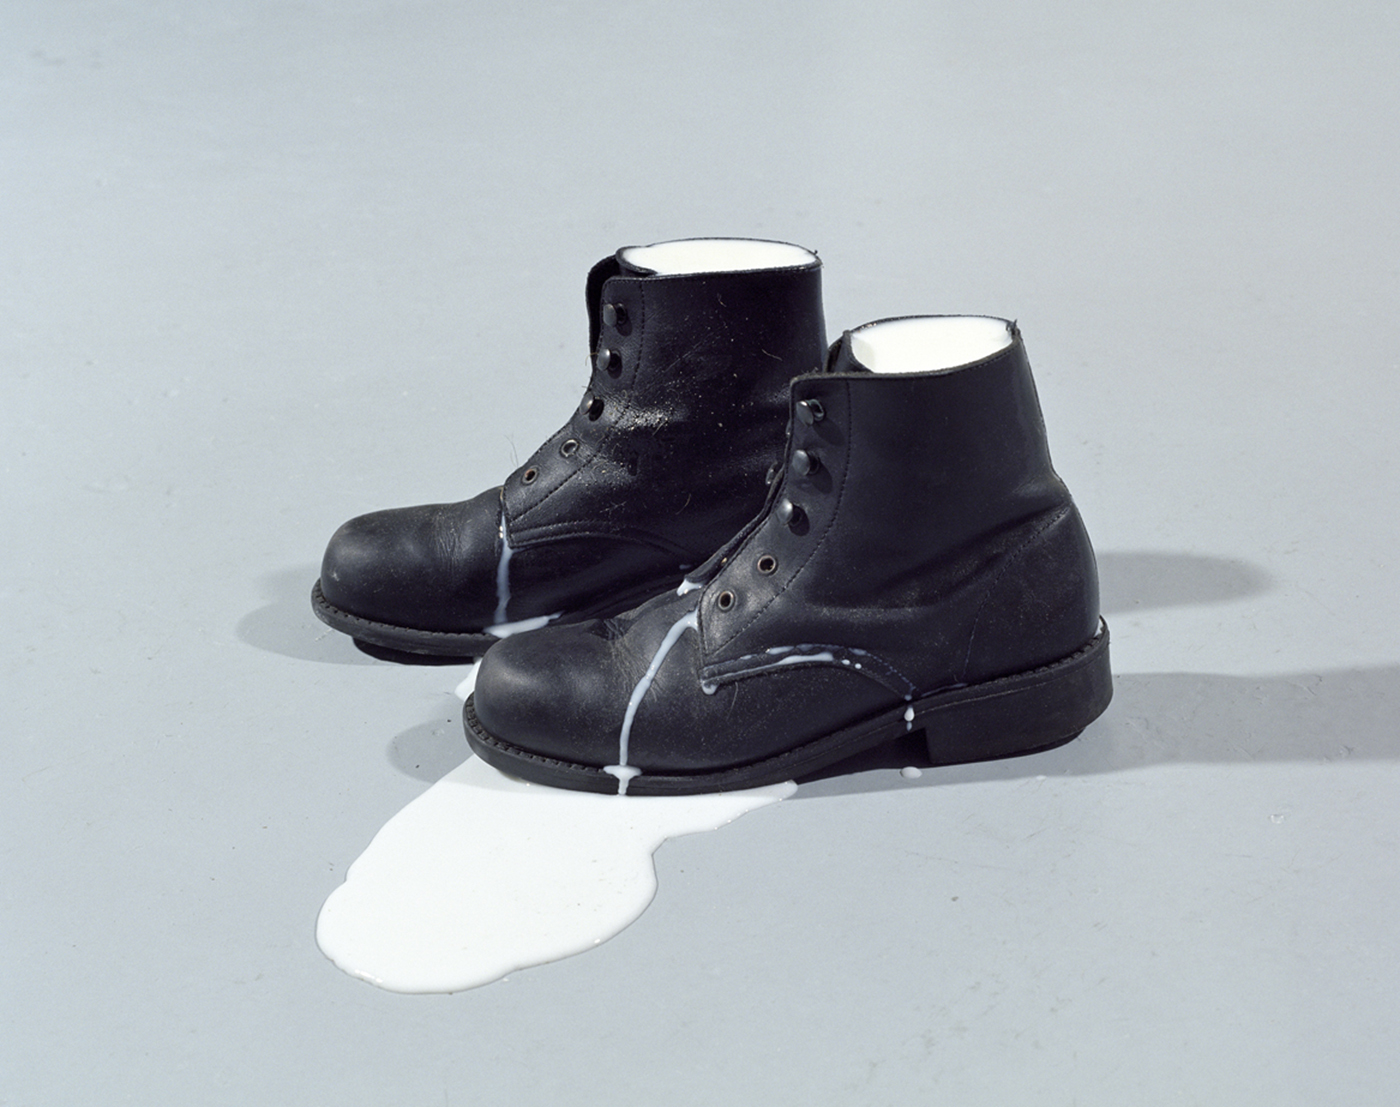 Patrick Tosani - Les chaussures de lait IV B (série chaussures de lait), 2002